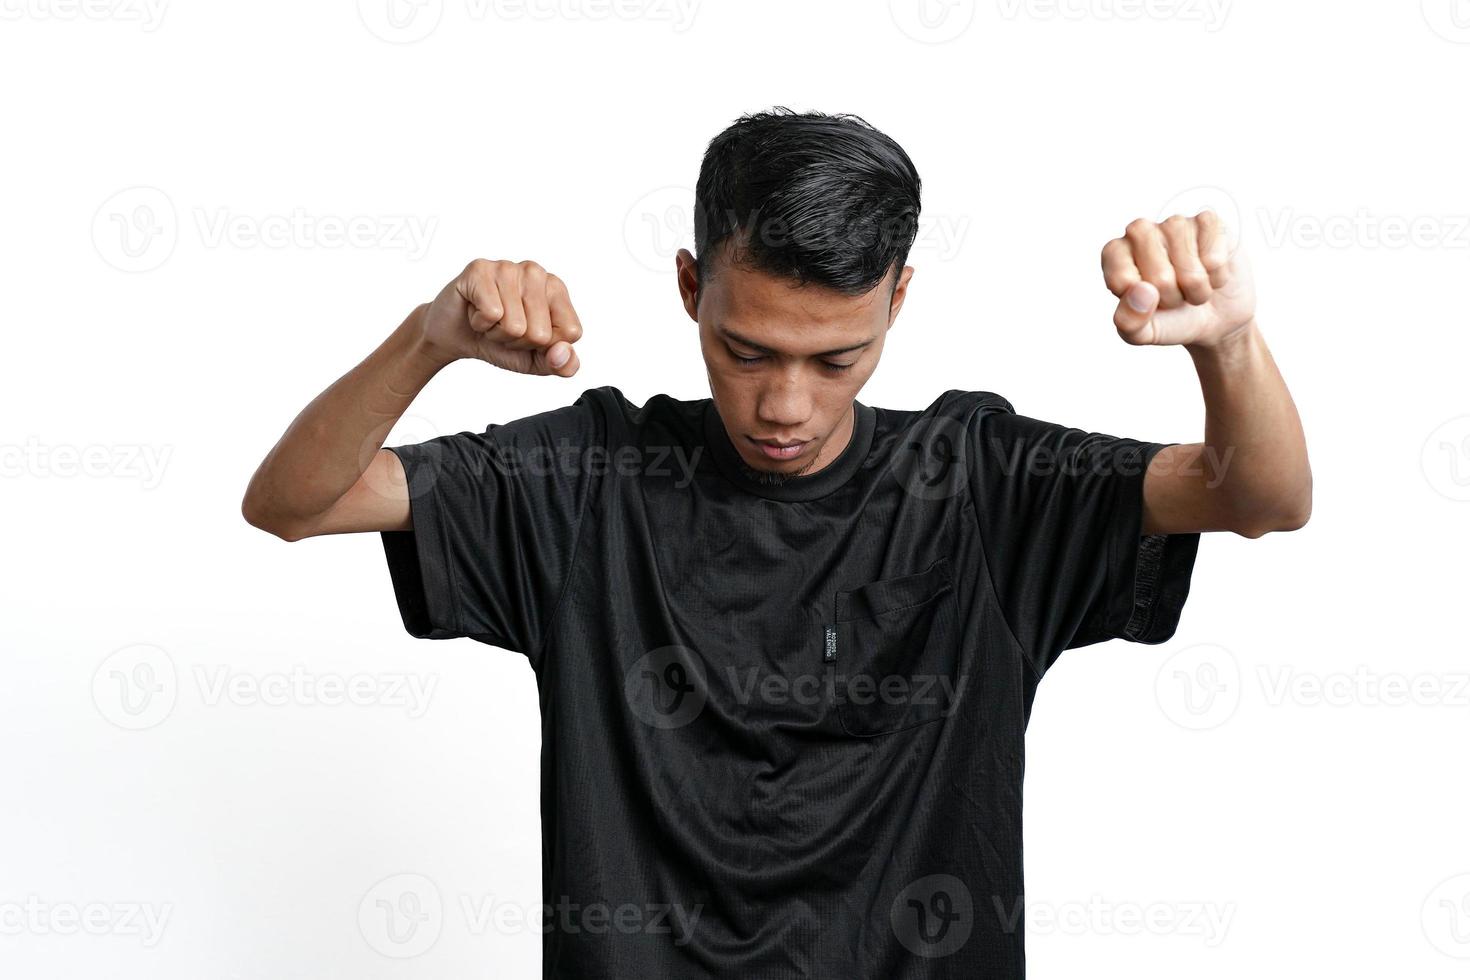 homme asiatique portant un t-shirt d'entraînement noir, montrant une position forte avec les bras et les muscles levés. isolé sur fond blanc photo